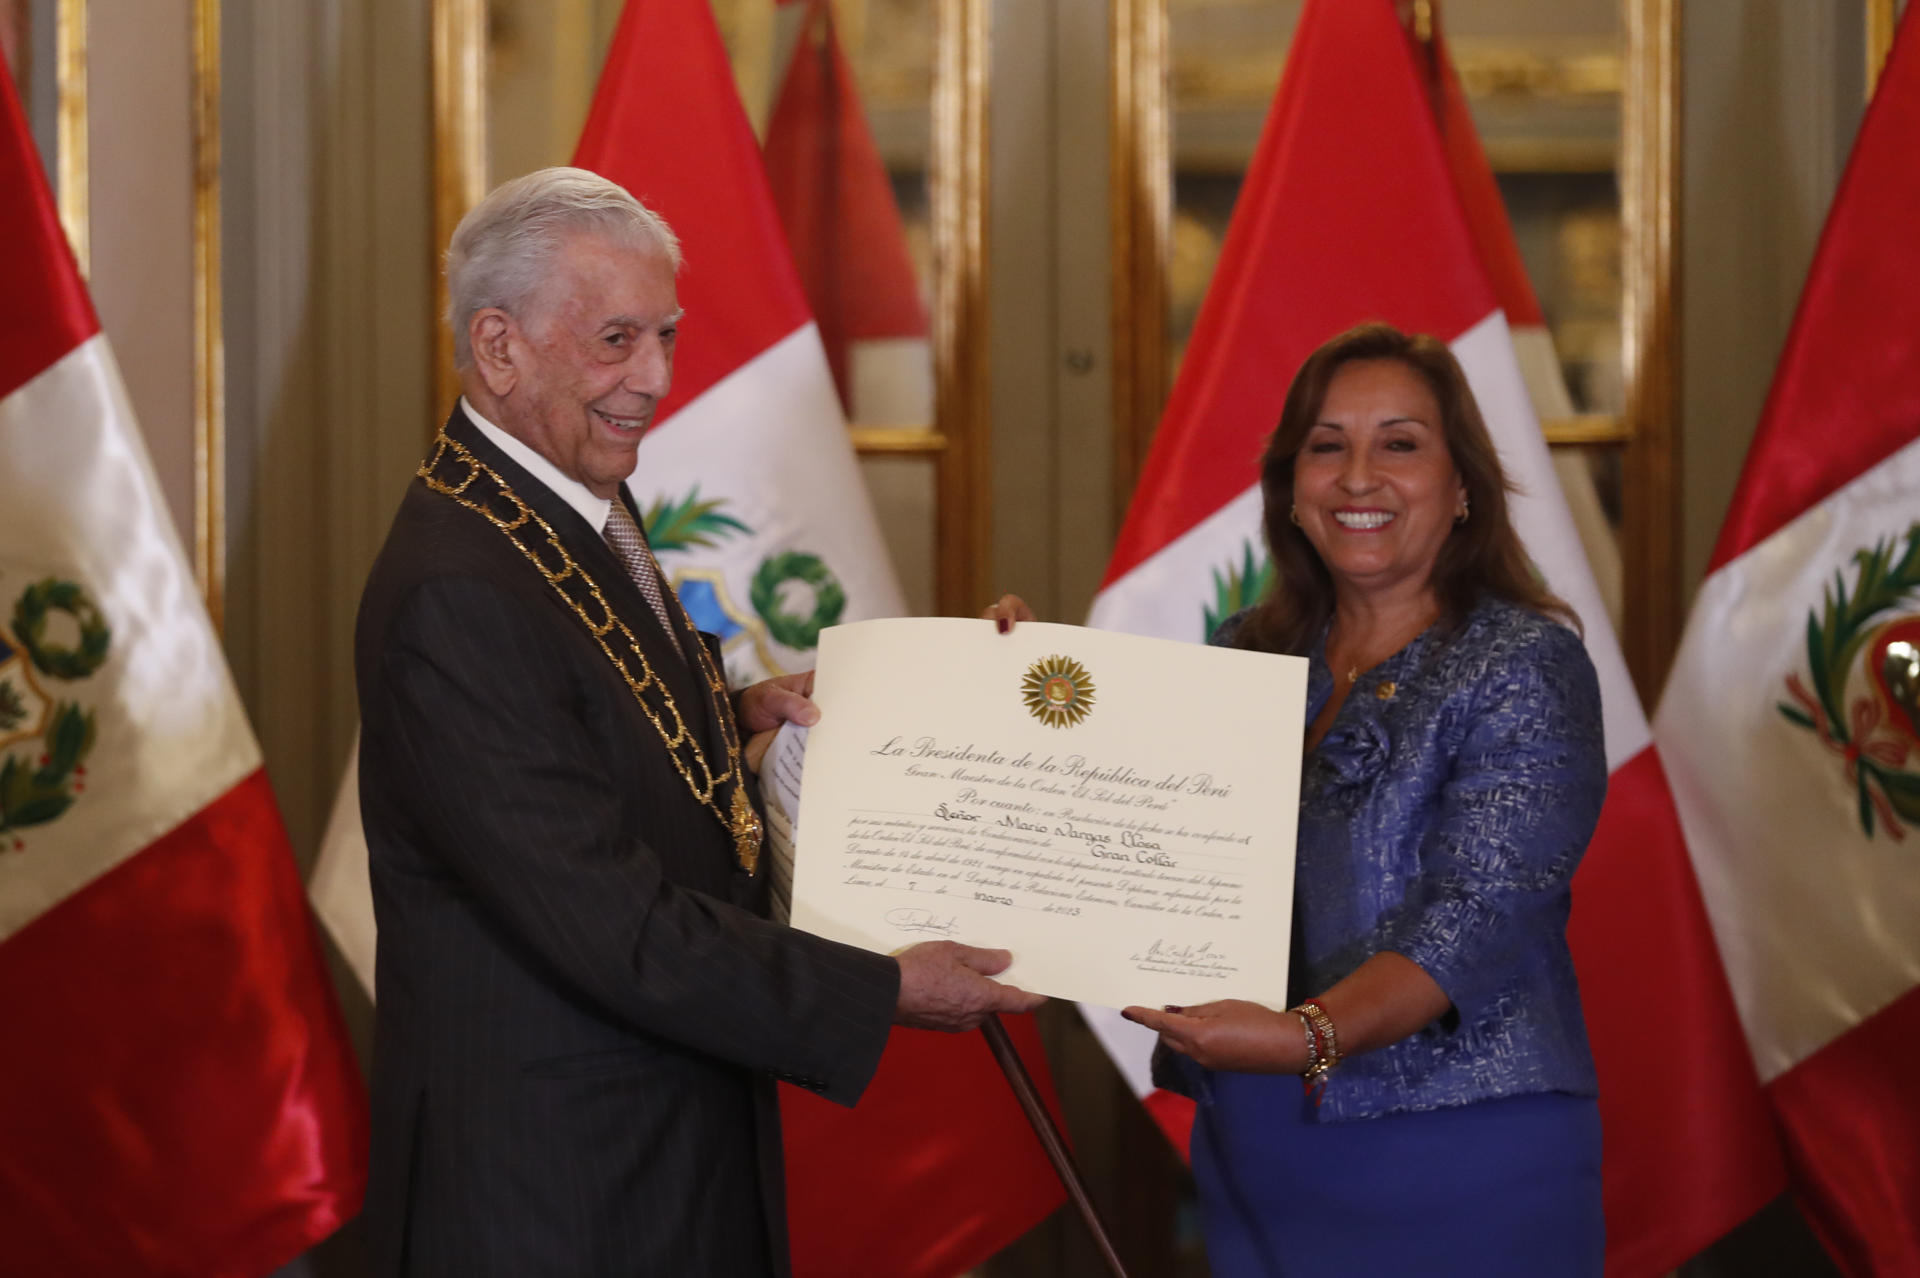 La presidenta del Perú otorgó la máxima condecoración oficial a Vargas Llosa